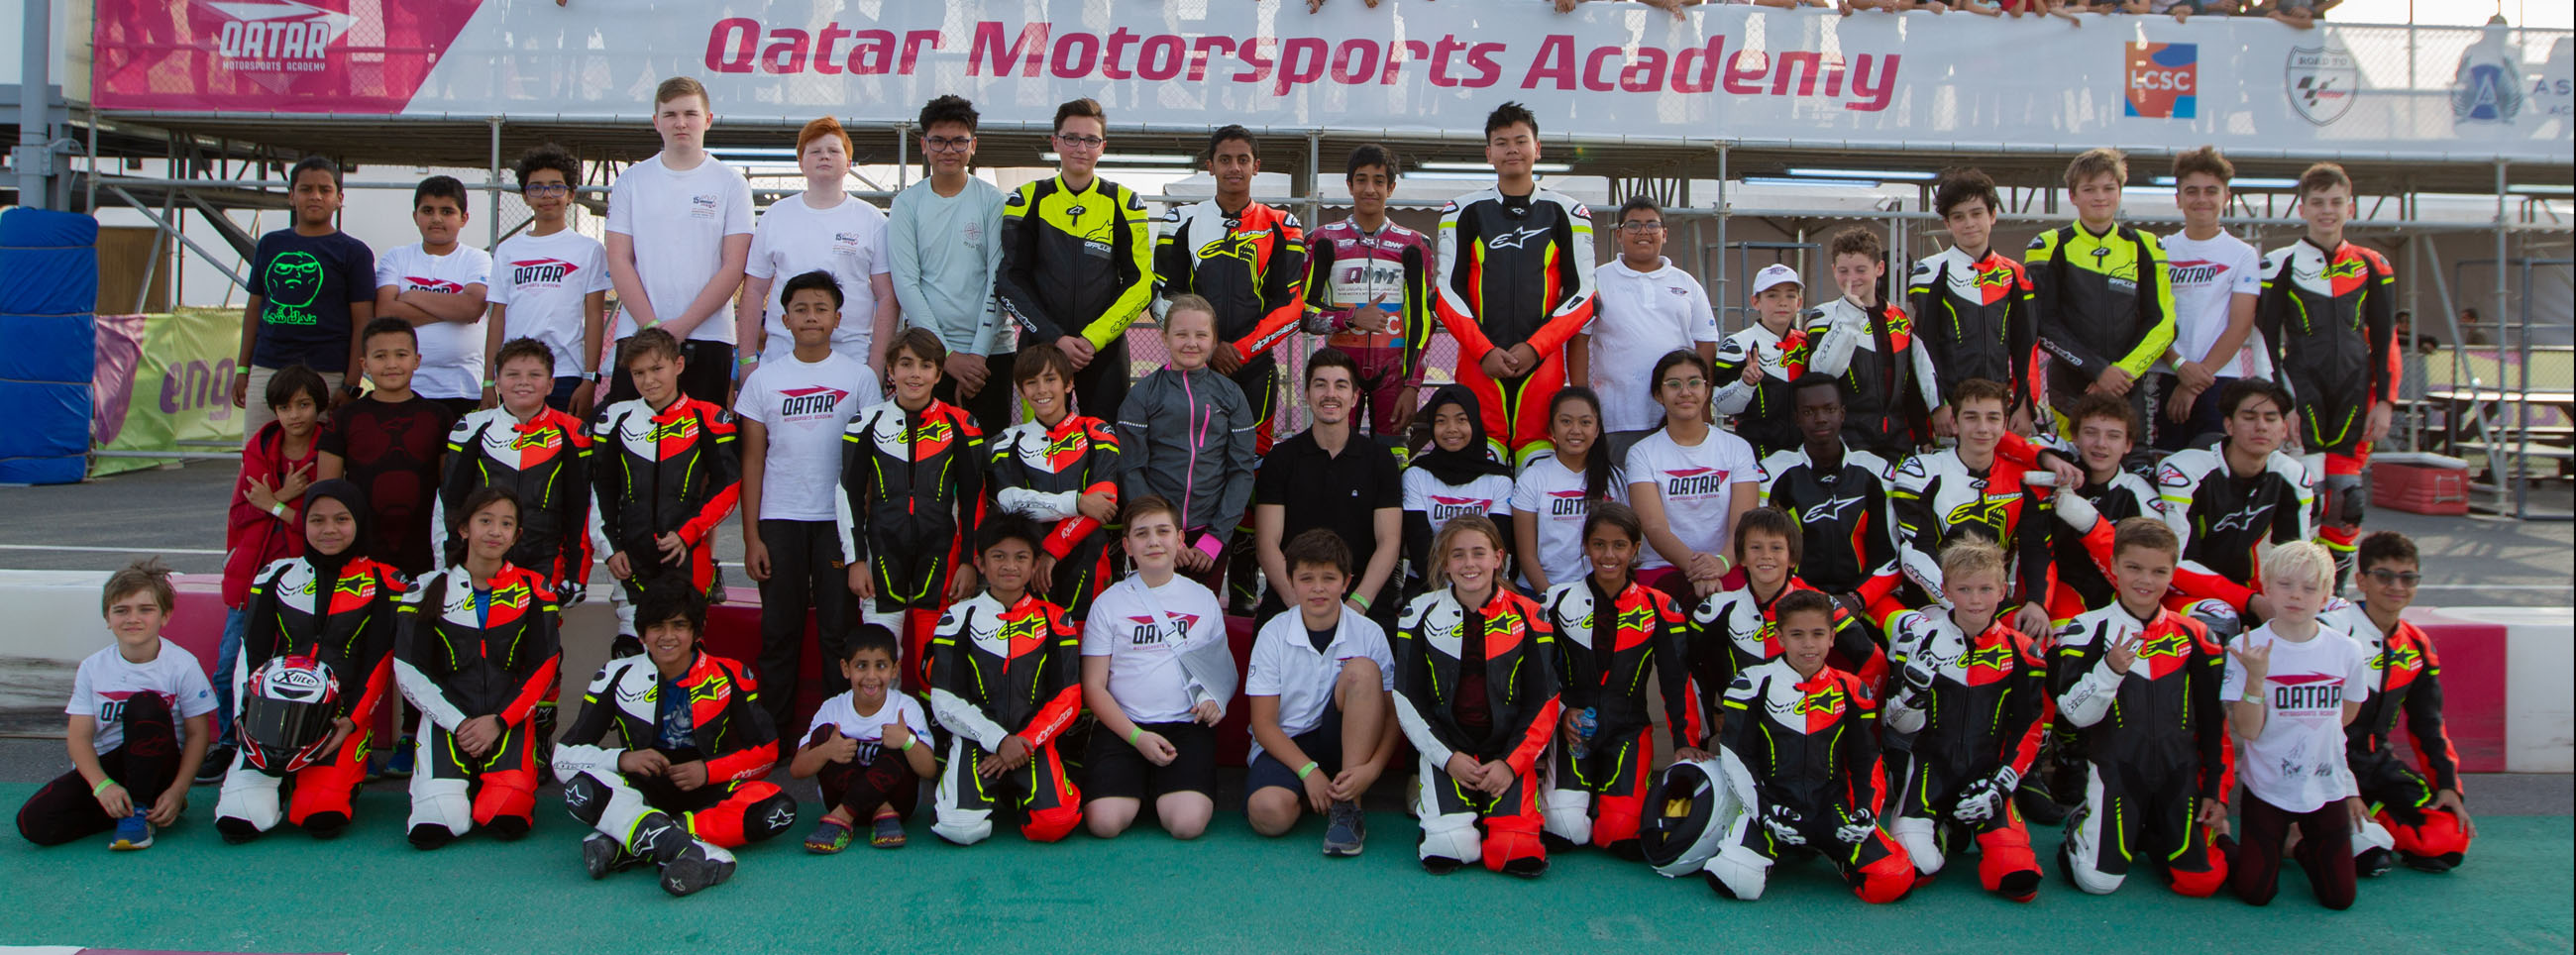 Qatar Motorsport Academy for children